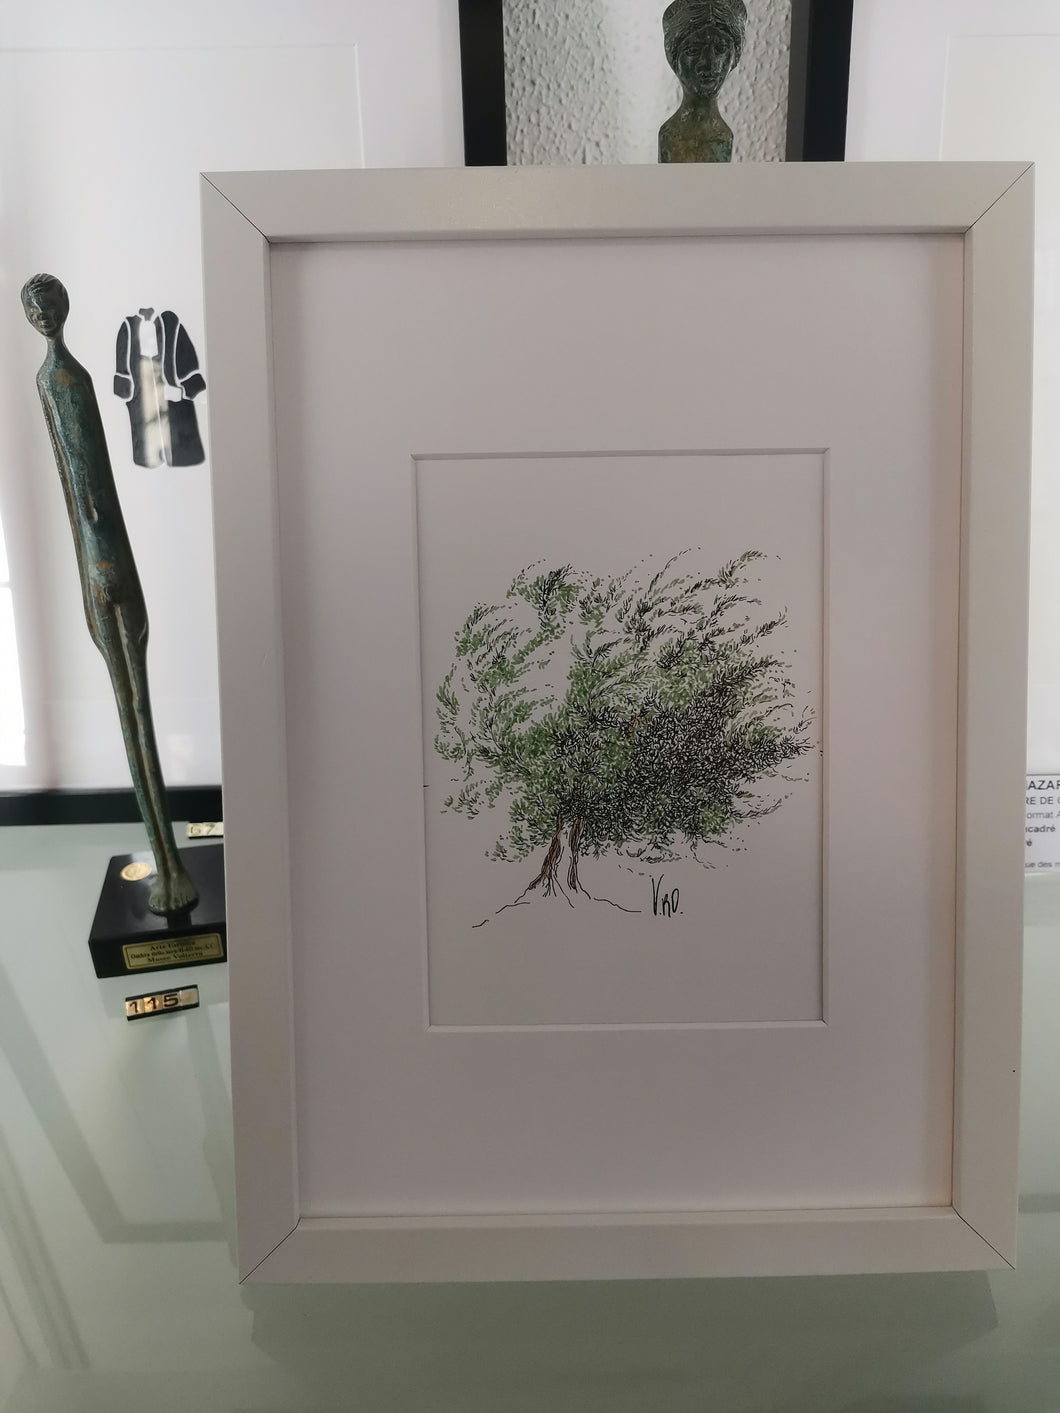 L'olivier au vent by Véronique Lecoq